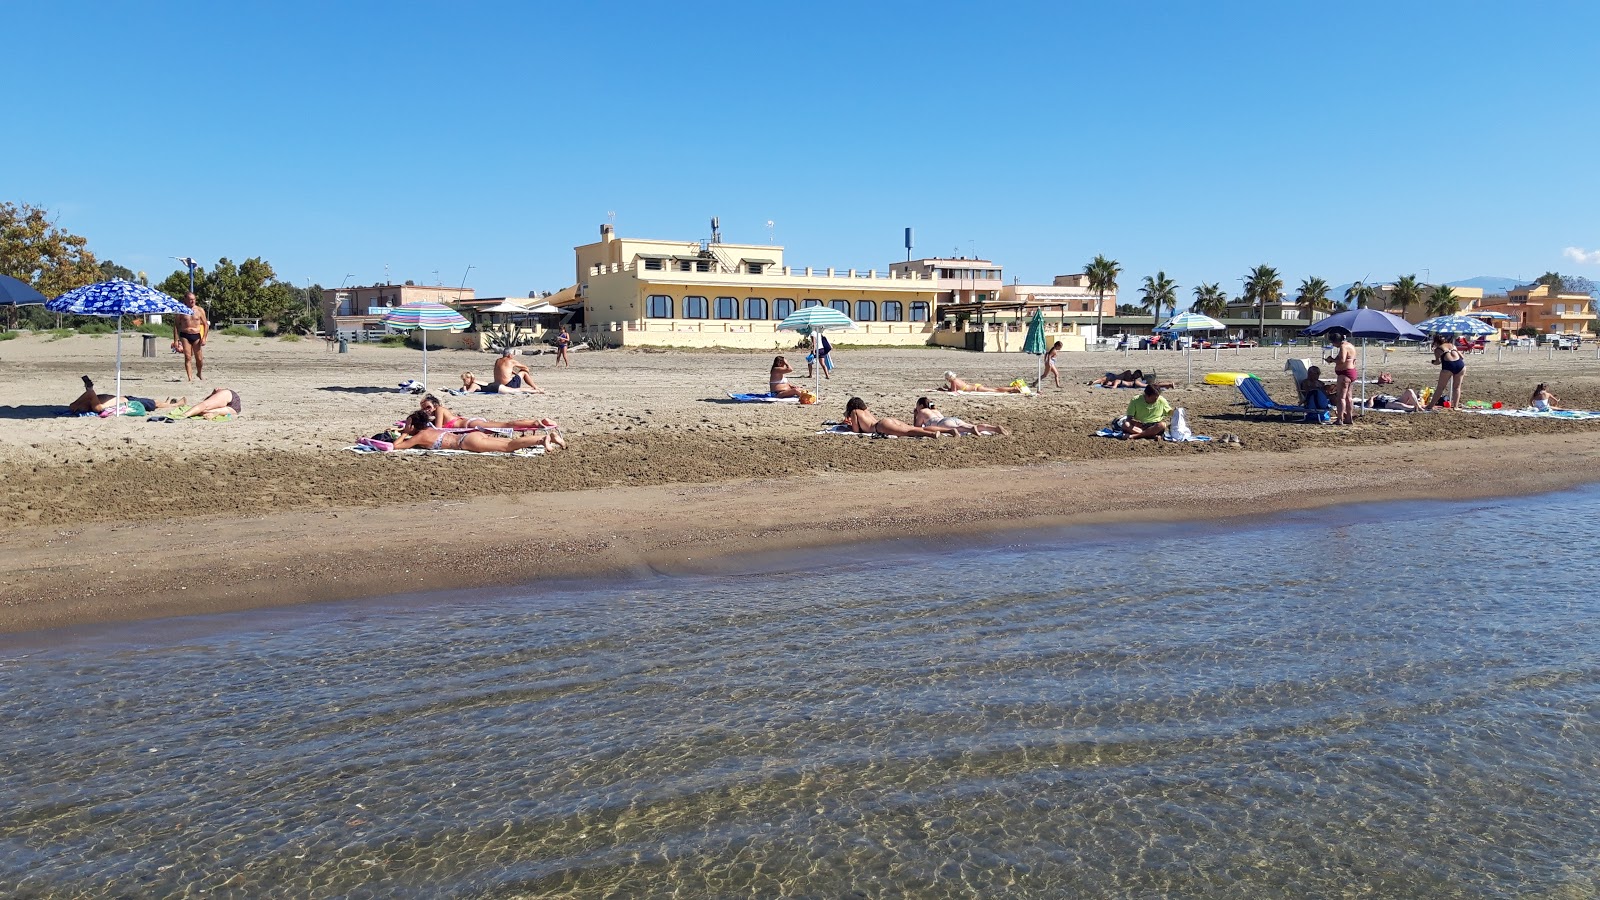 Foto av Spiaggia Attrezzata med stora vikar